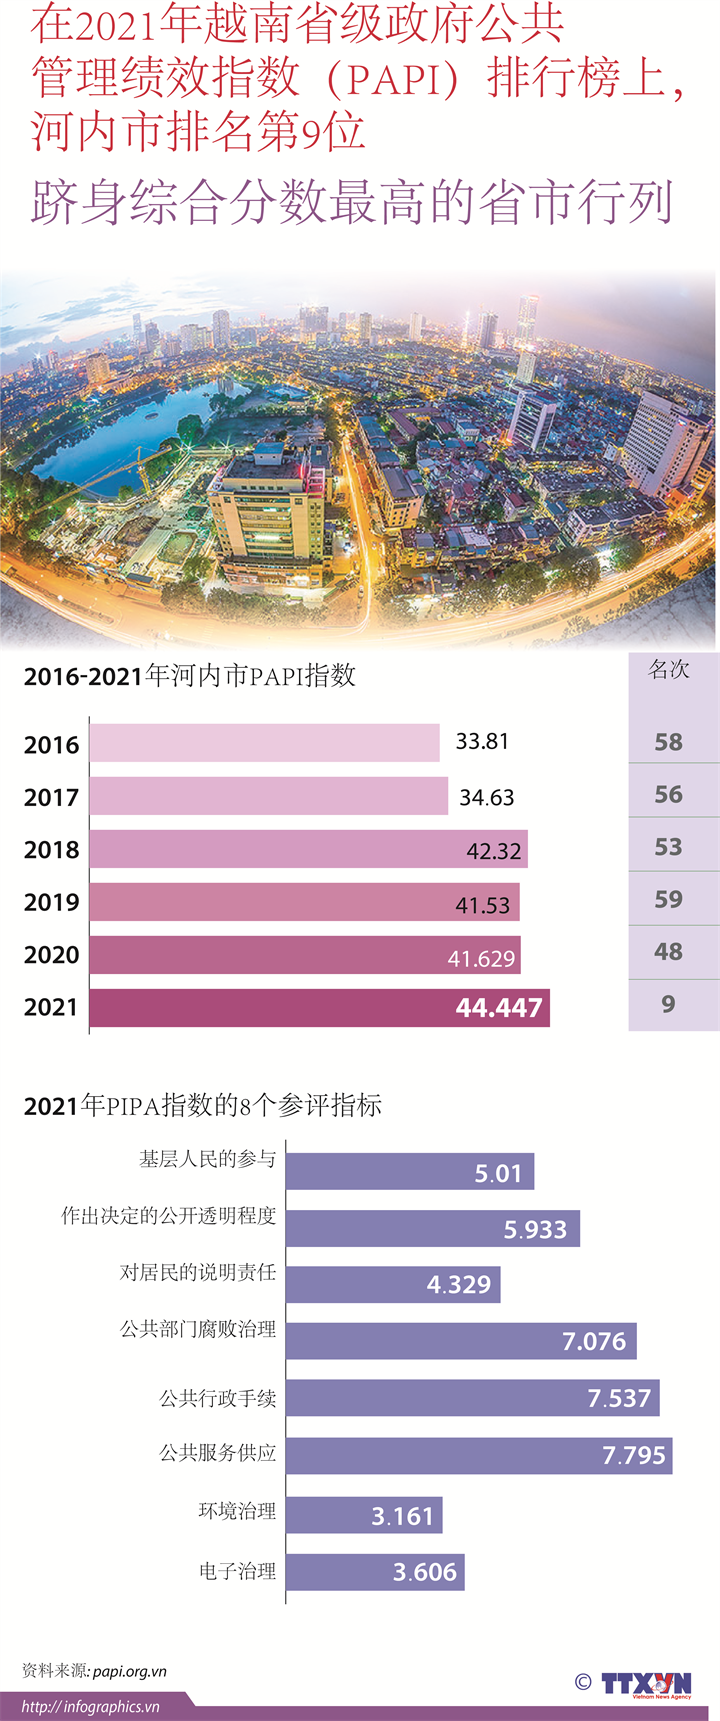 在2021年越南PAPI排行榜上，河内市排名第9位